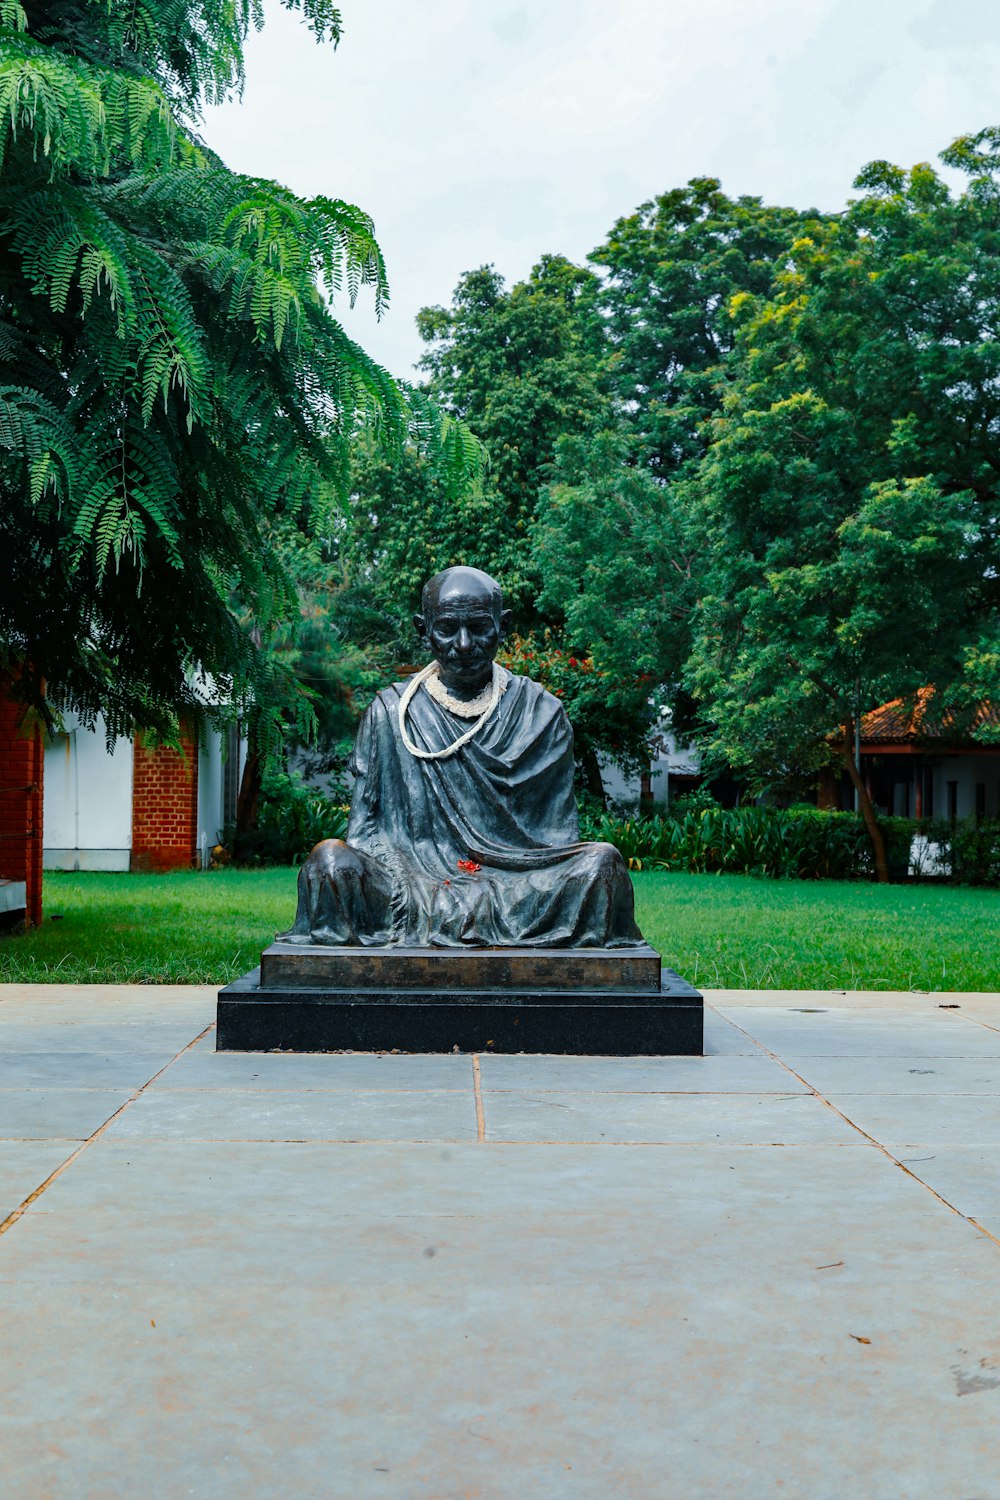 Una estatua de un hombre sentado en un banco de piedra en un parque